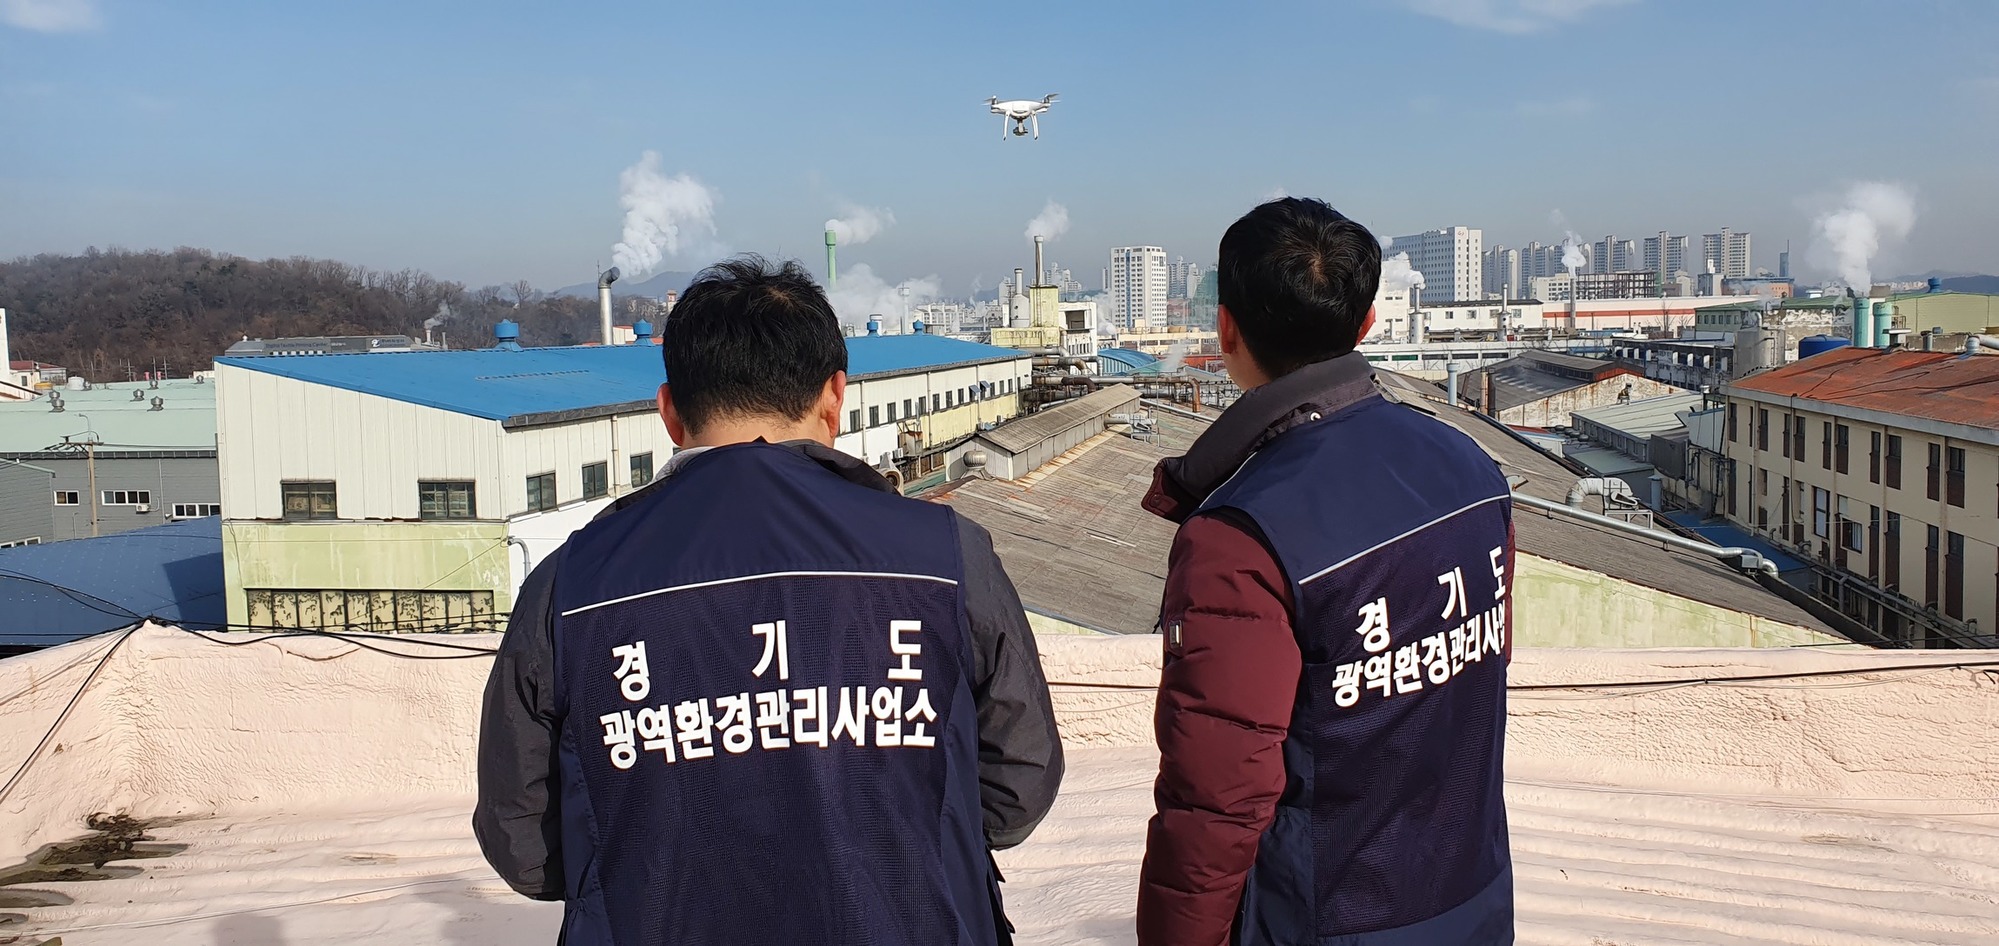 경기도광역환경관리사업소 직원이 드론으로 오염지역을 감시하고 있다.